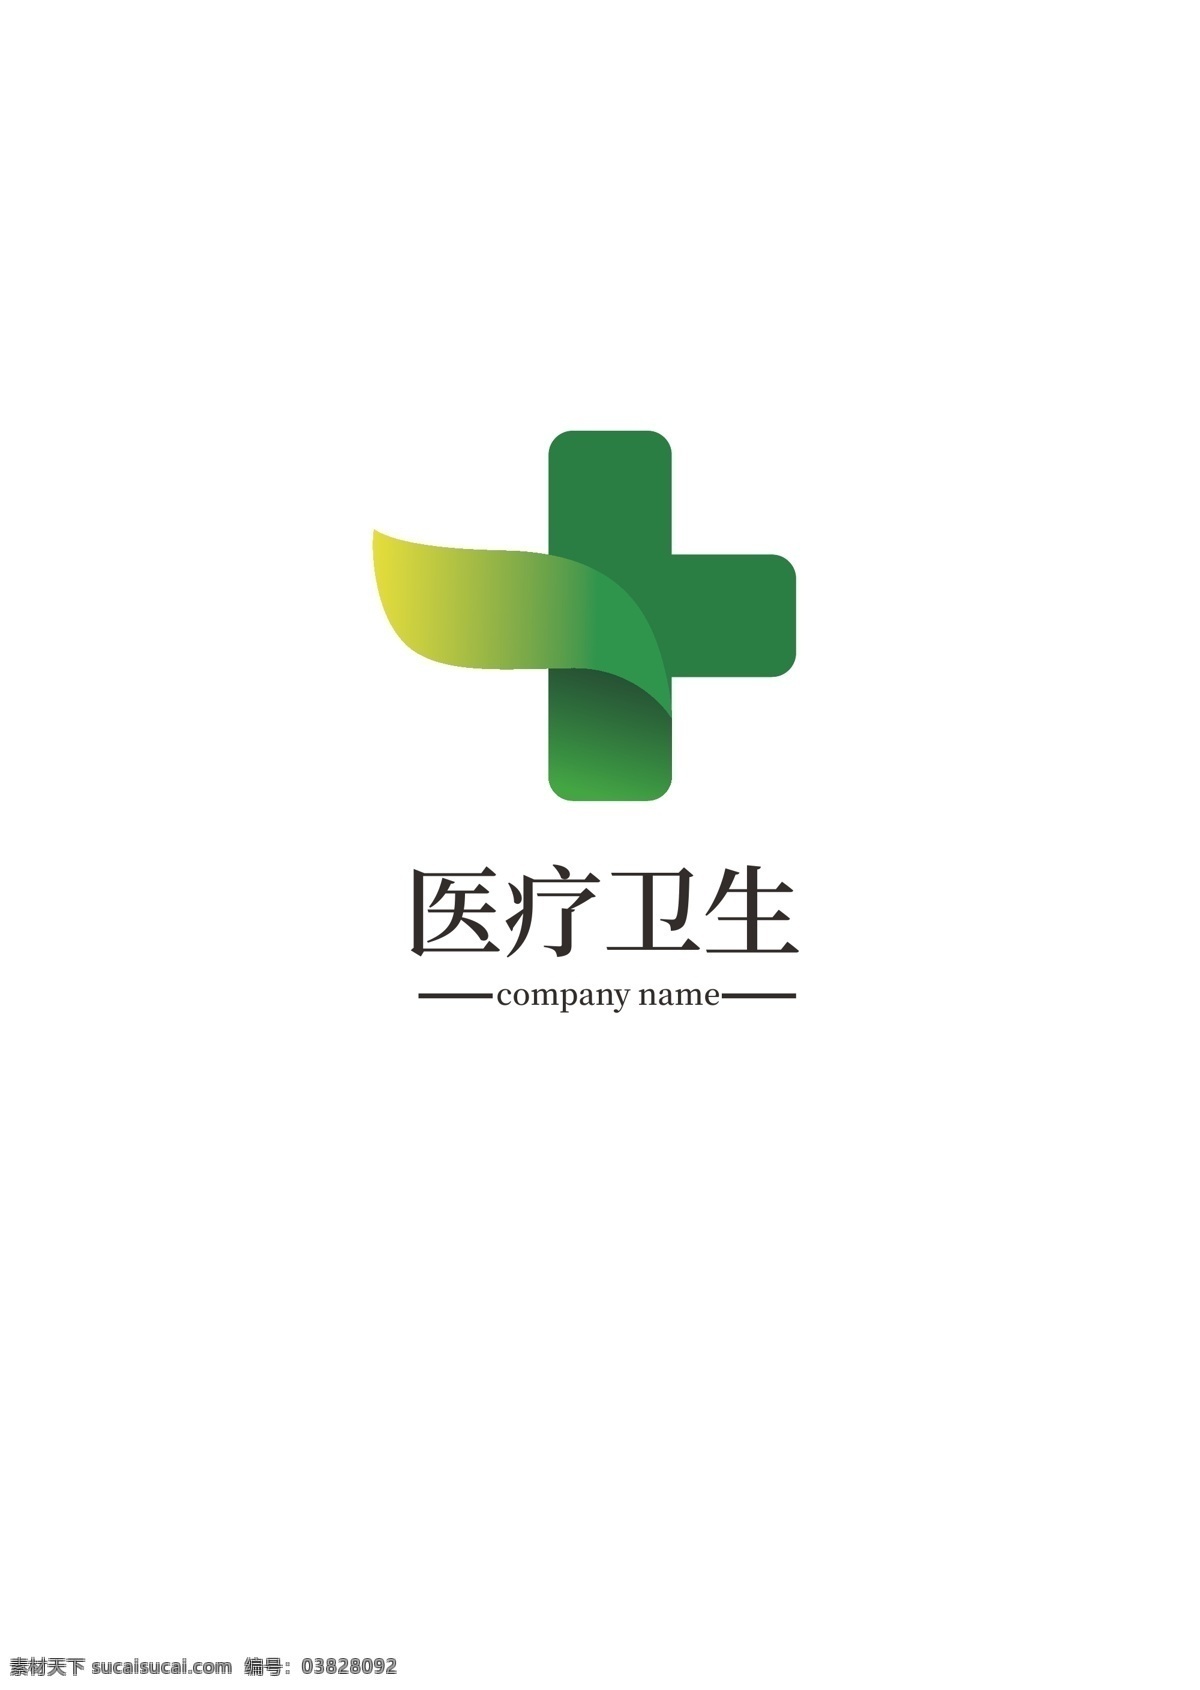 医疗 logo 医药 标识设计 卫生 商标设计 标识 美容 绿色标志